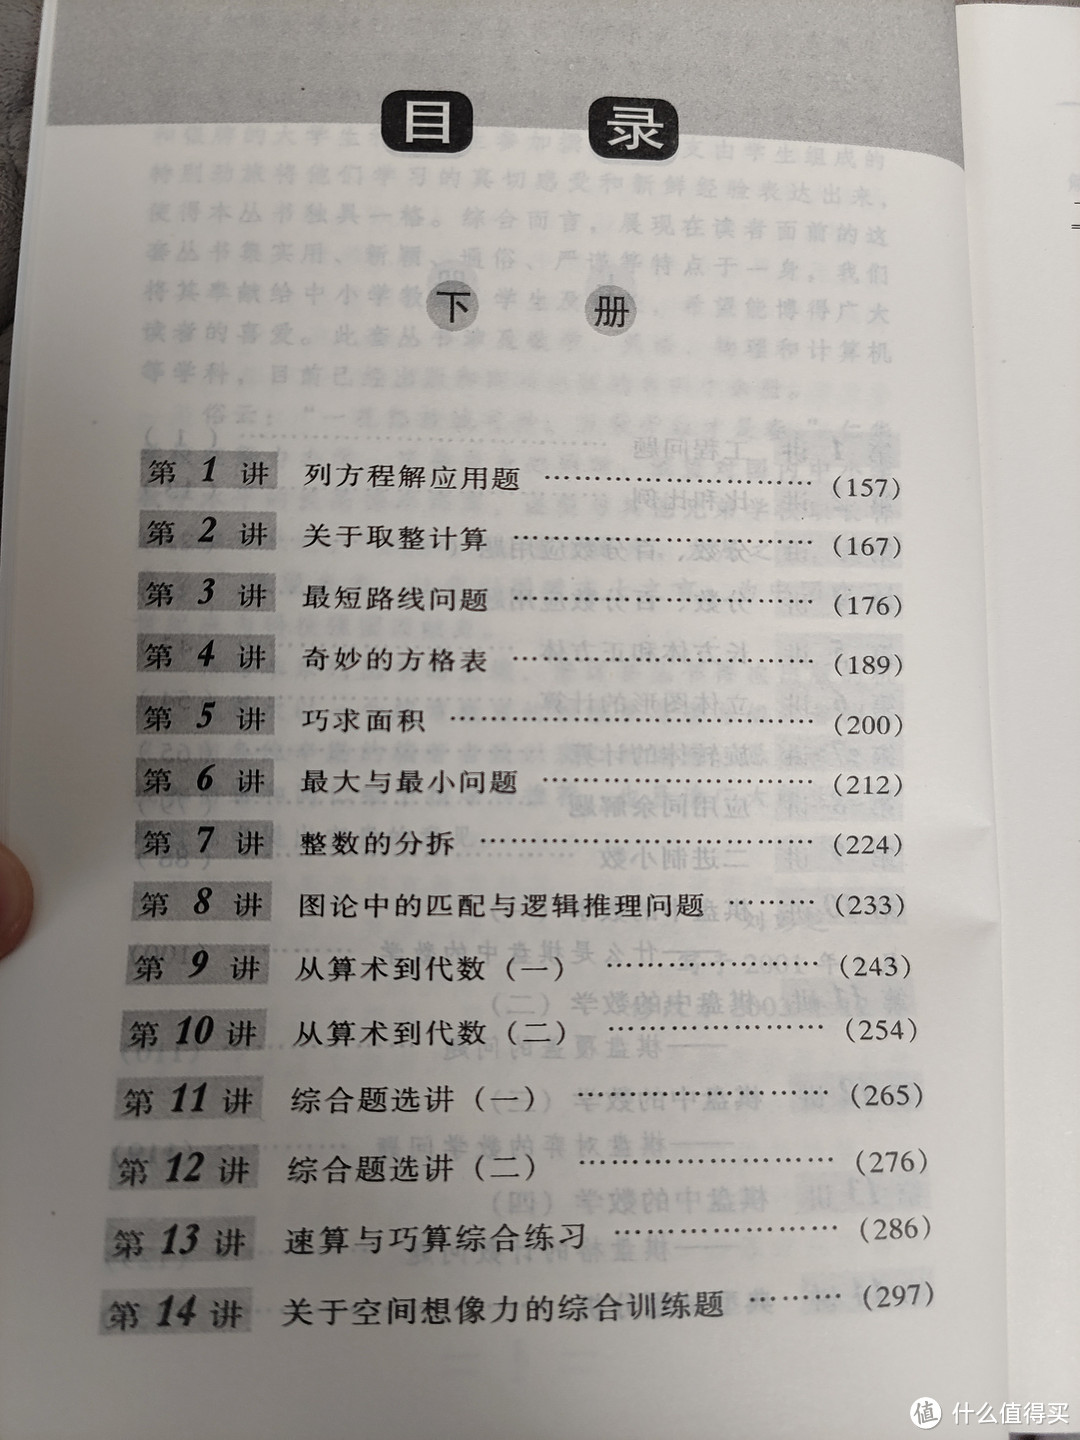 中国大百科全书出版社《仁华学校奥林匹克数学课本》小学就全套小晒